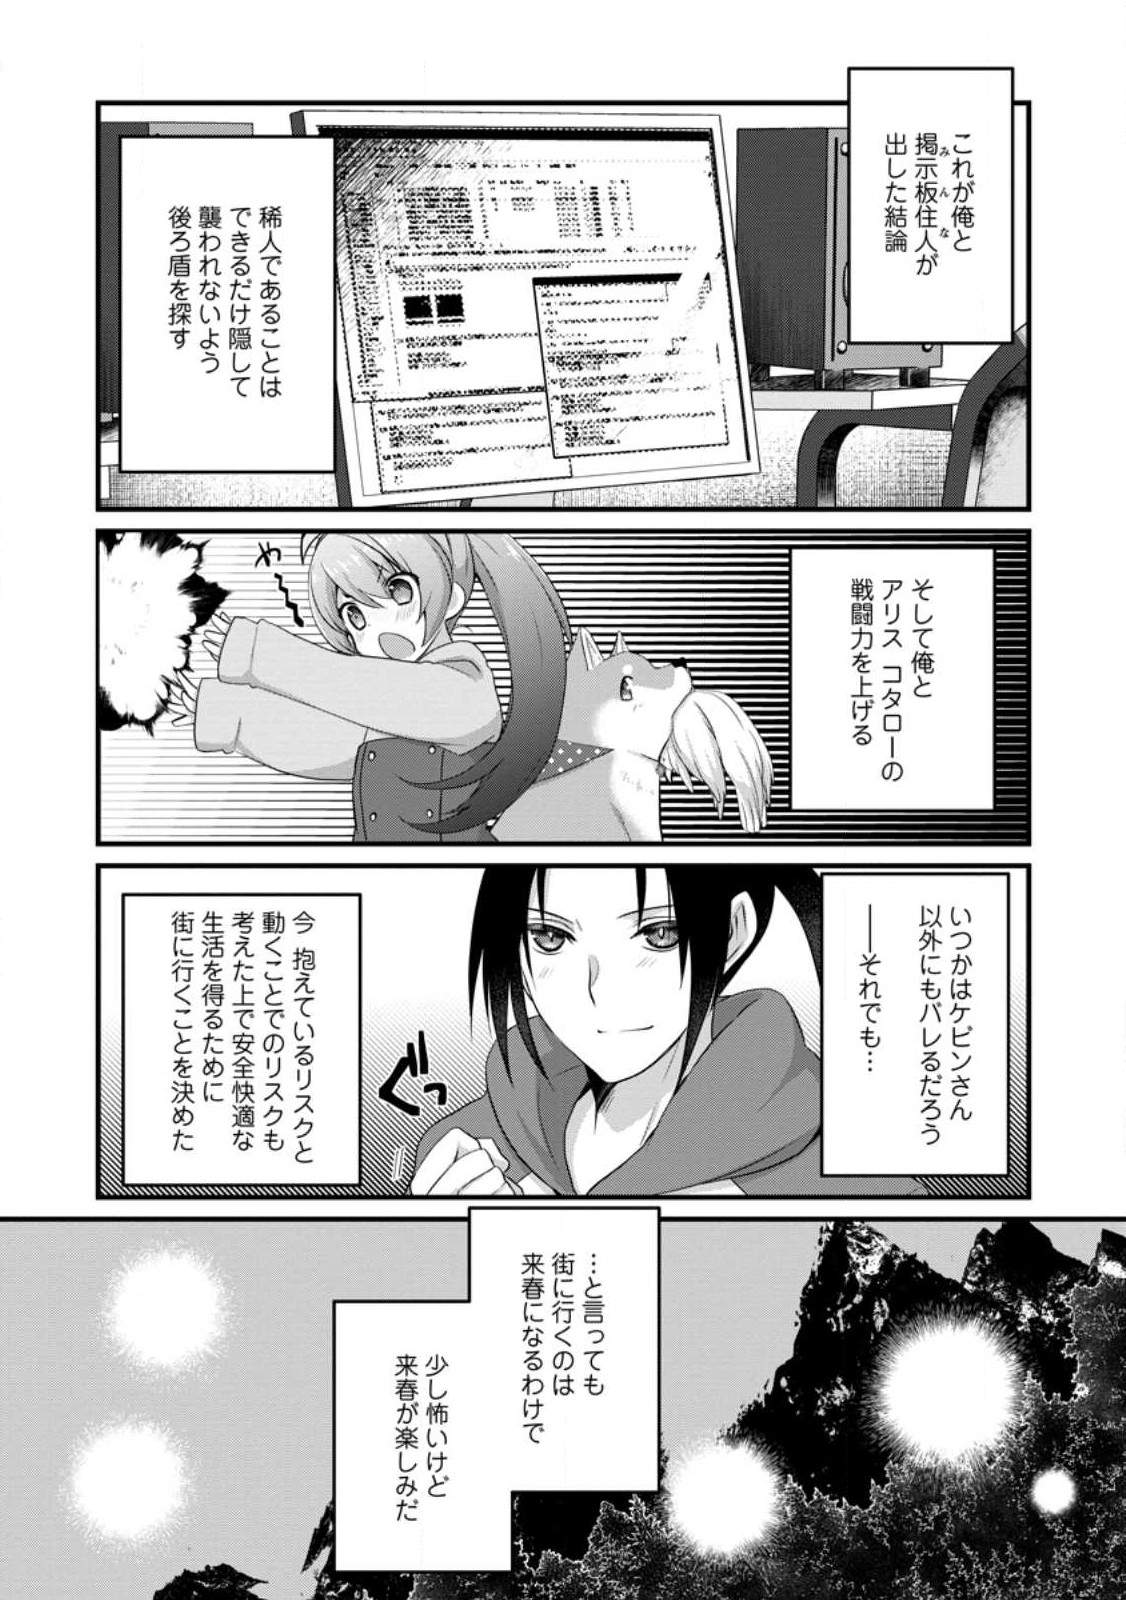 10-nen Goshi no HikiNEET wo Yamete Gaishutsu shitara Jitakugo to Isekai ni Tenishiteta - Chapter 10.3 - Page 11